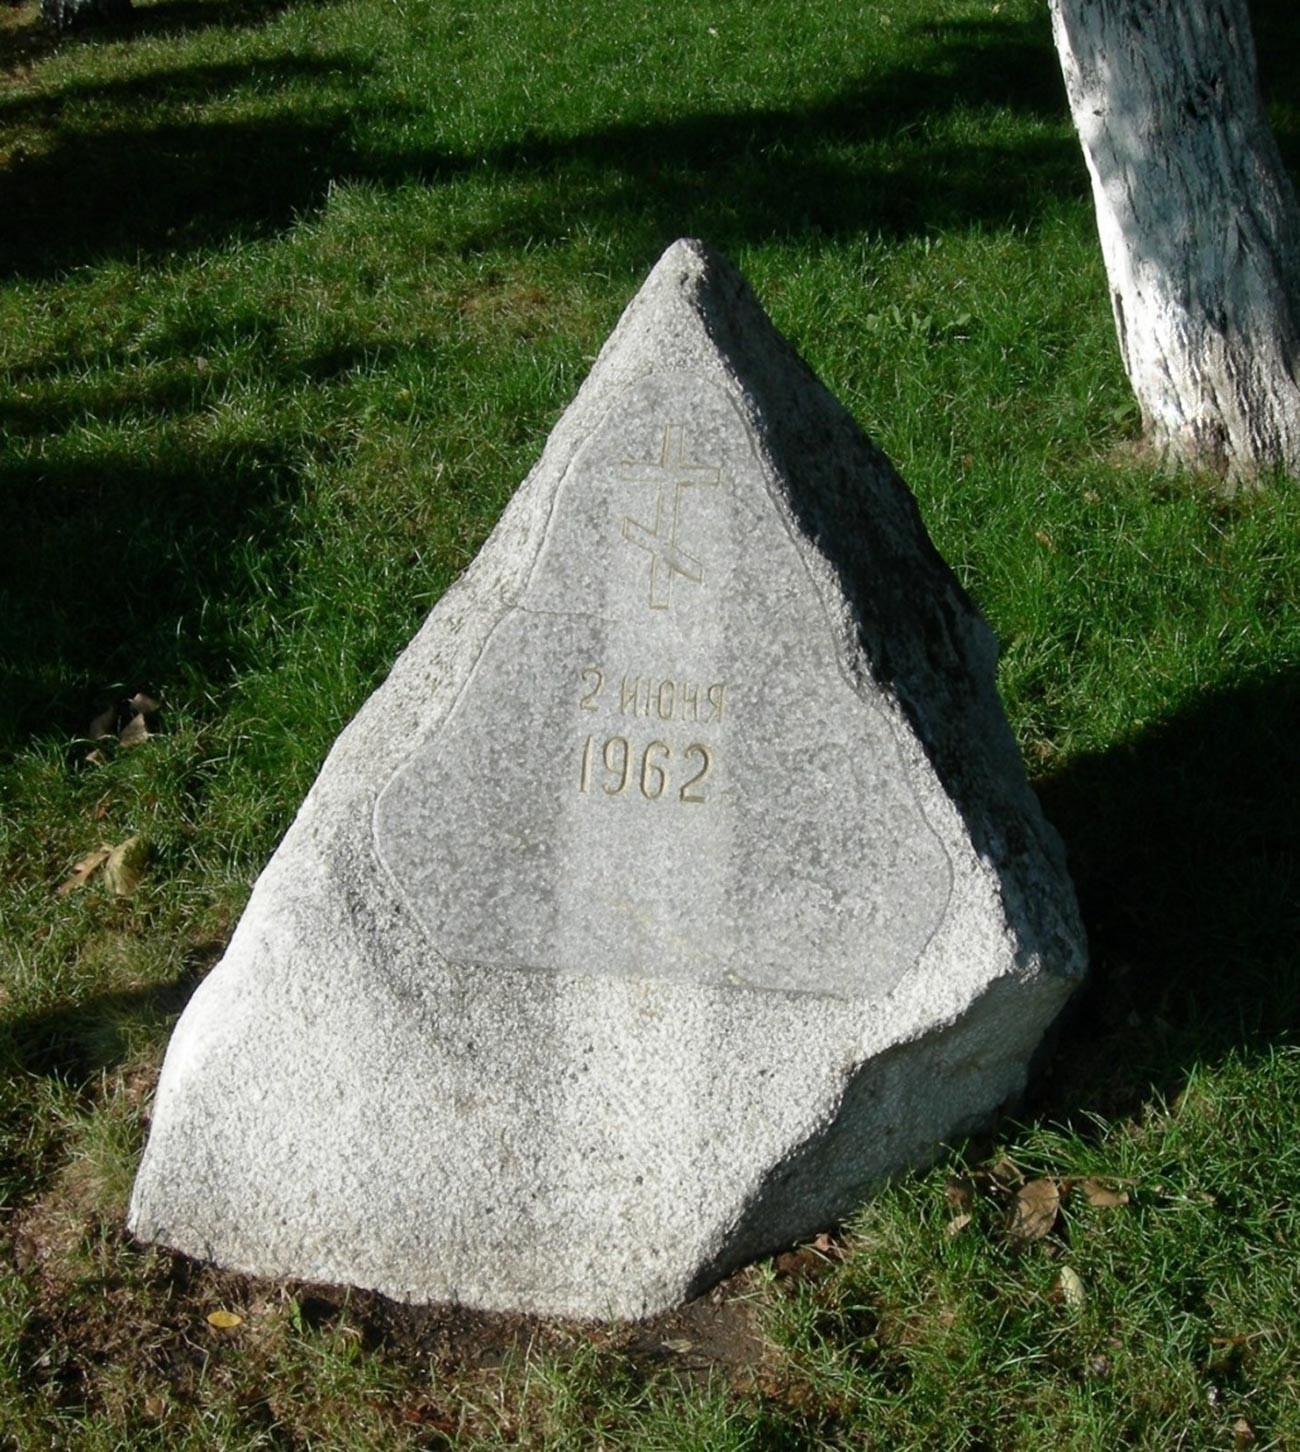 »Kamen na krvi«, današnji spomin na žrtve masakra leta 1962 v Novočerkasku

